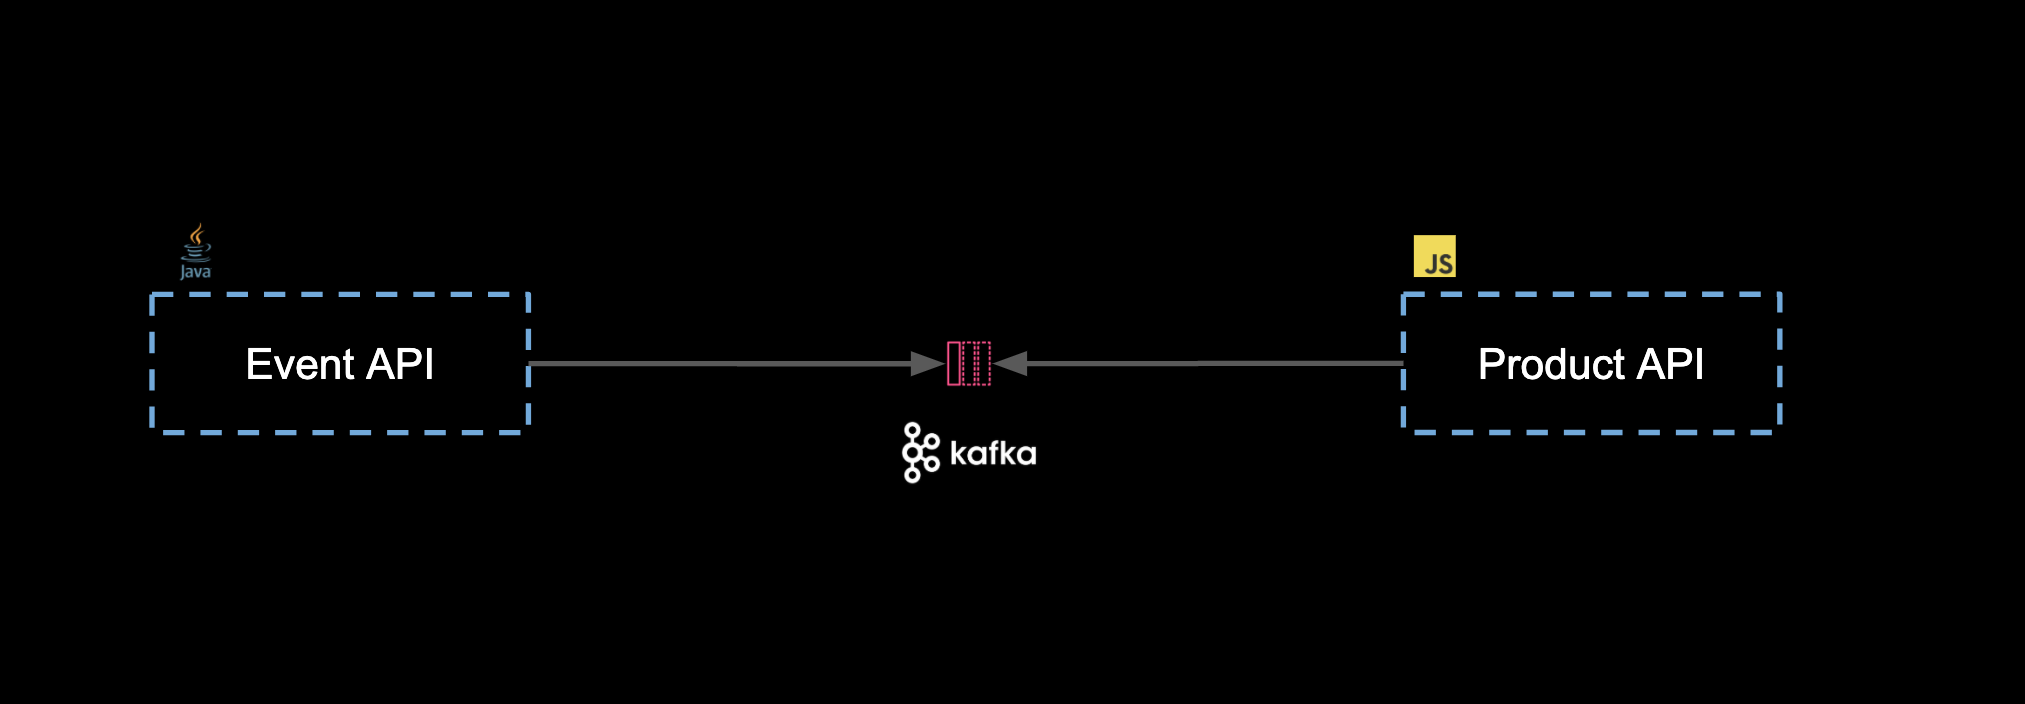 Kafka Architecture